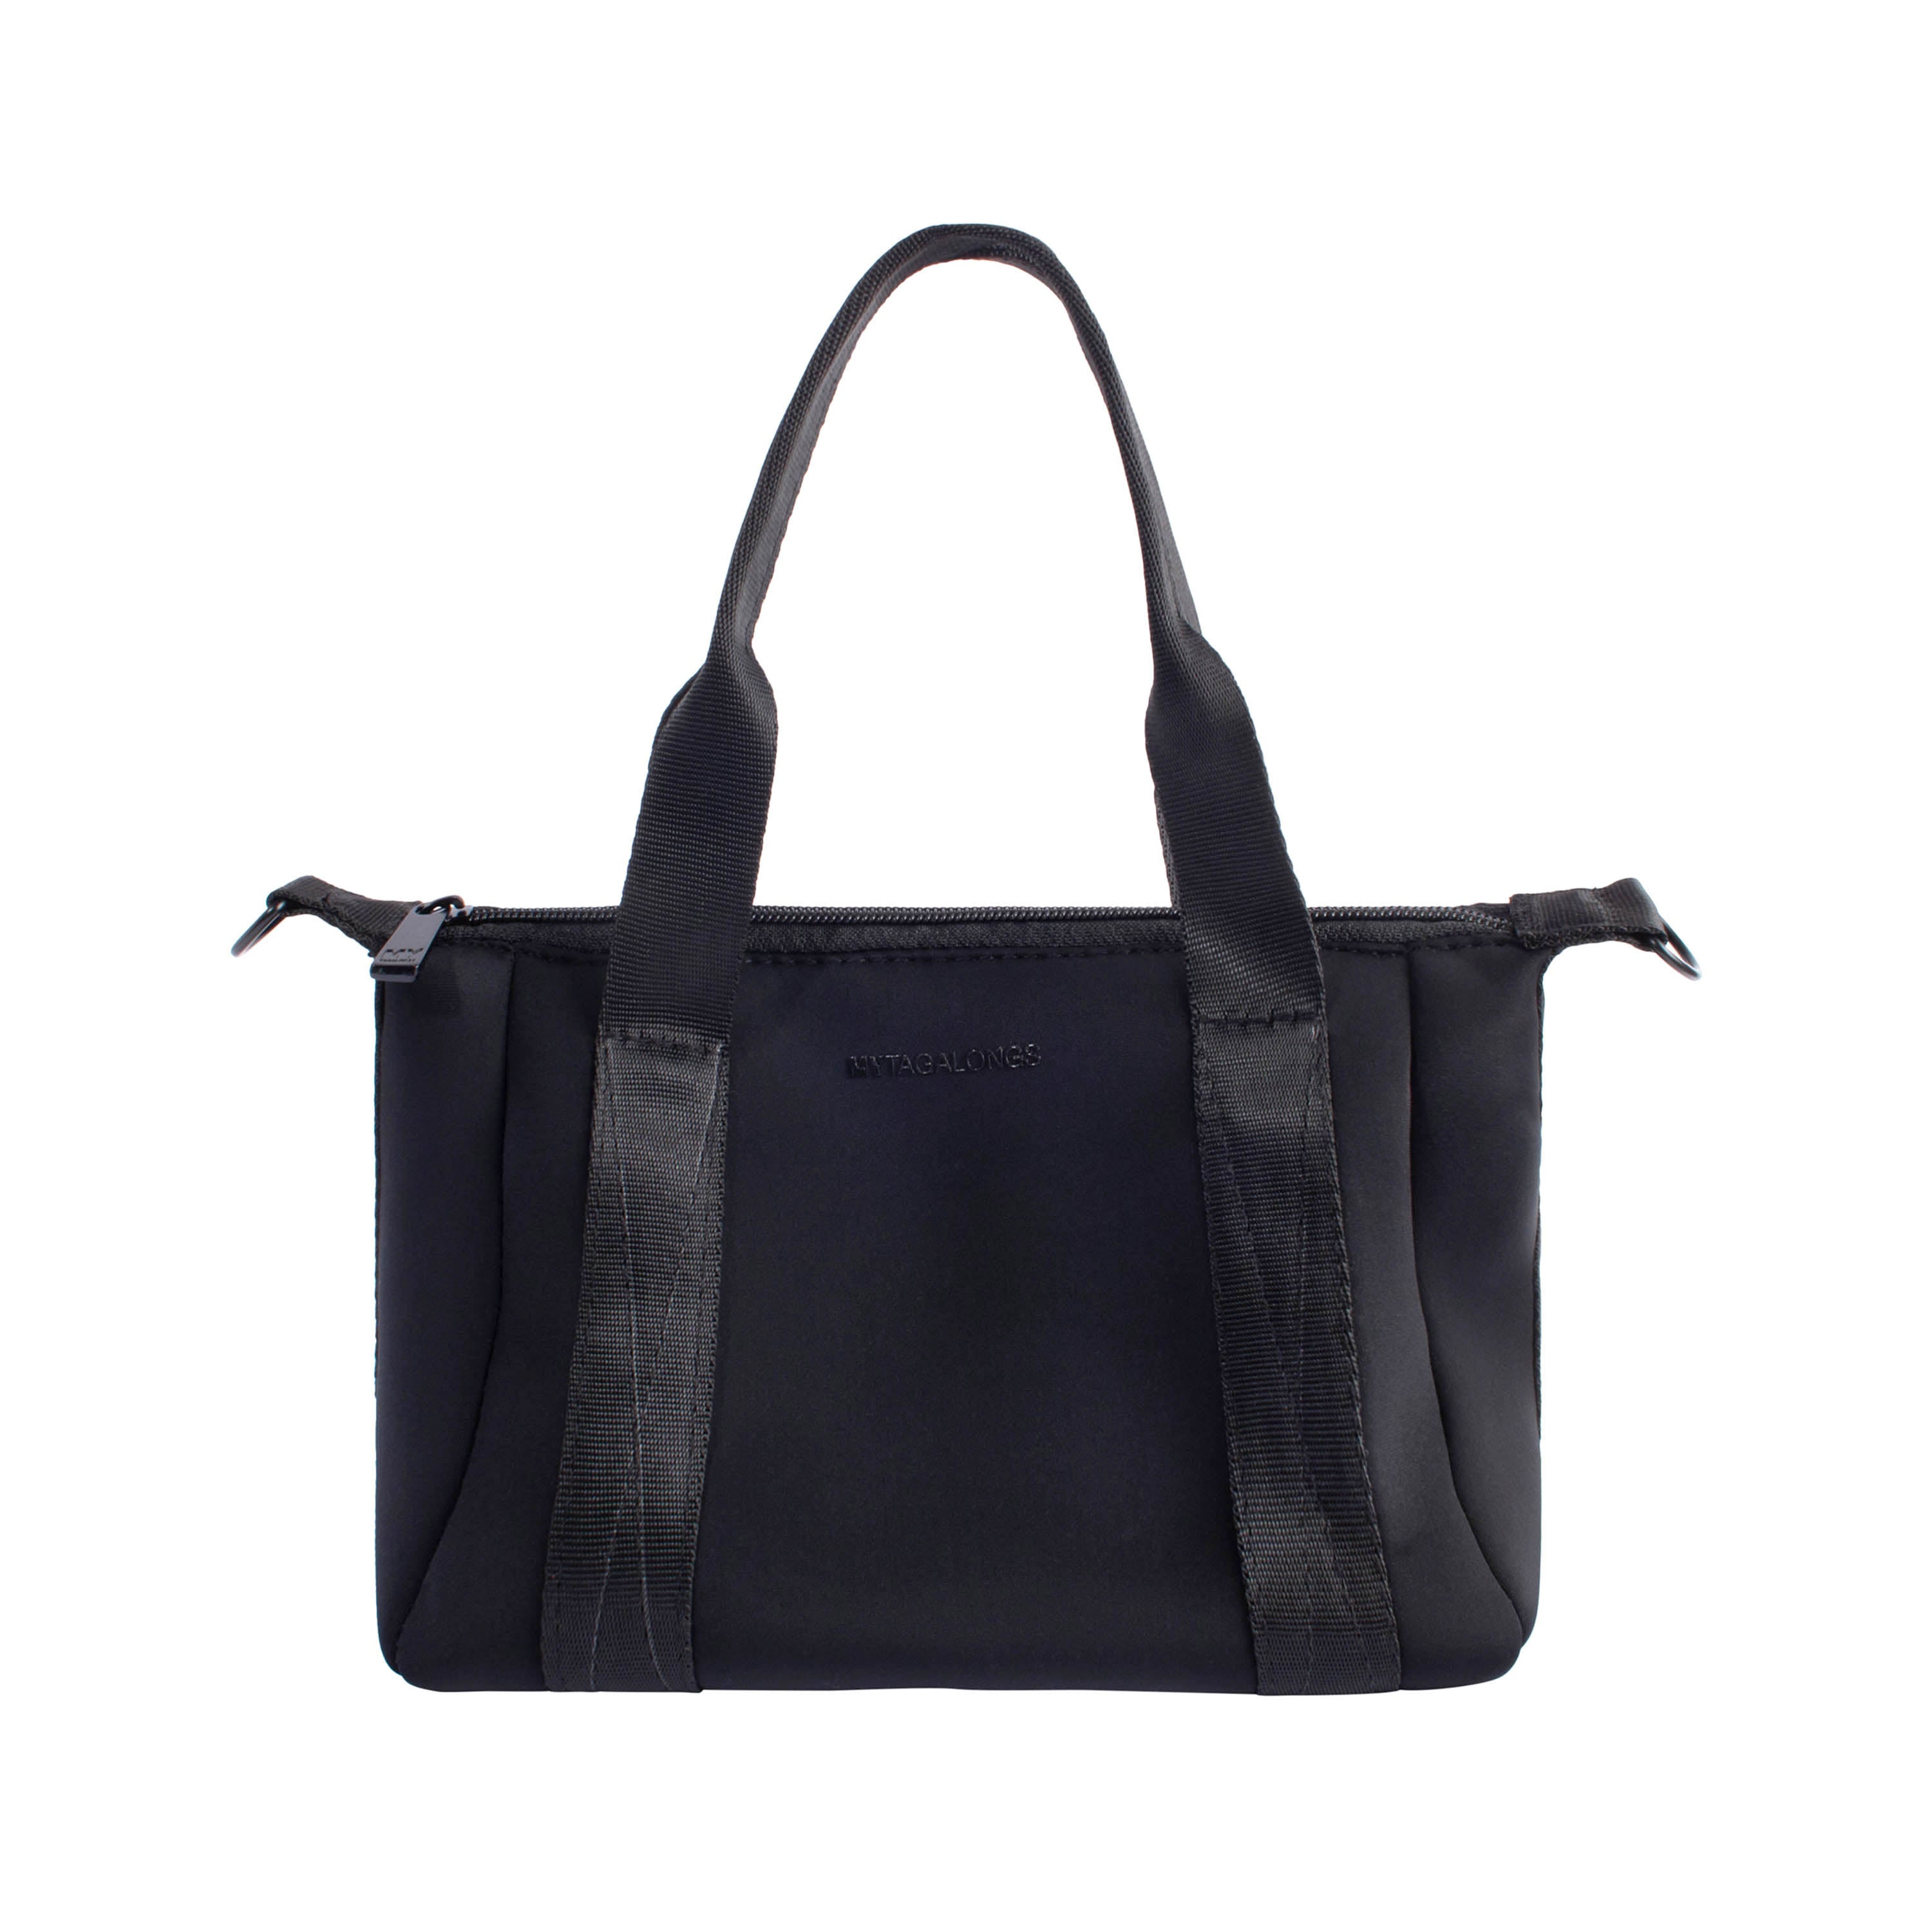 Black mini bag made of neoprene